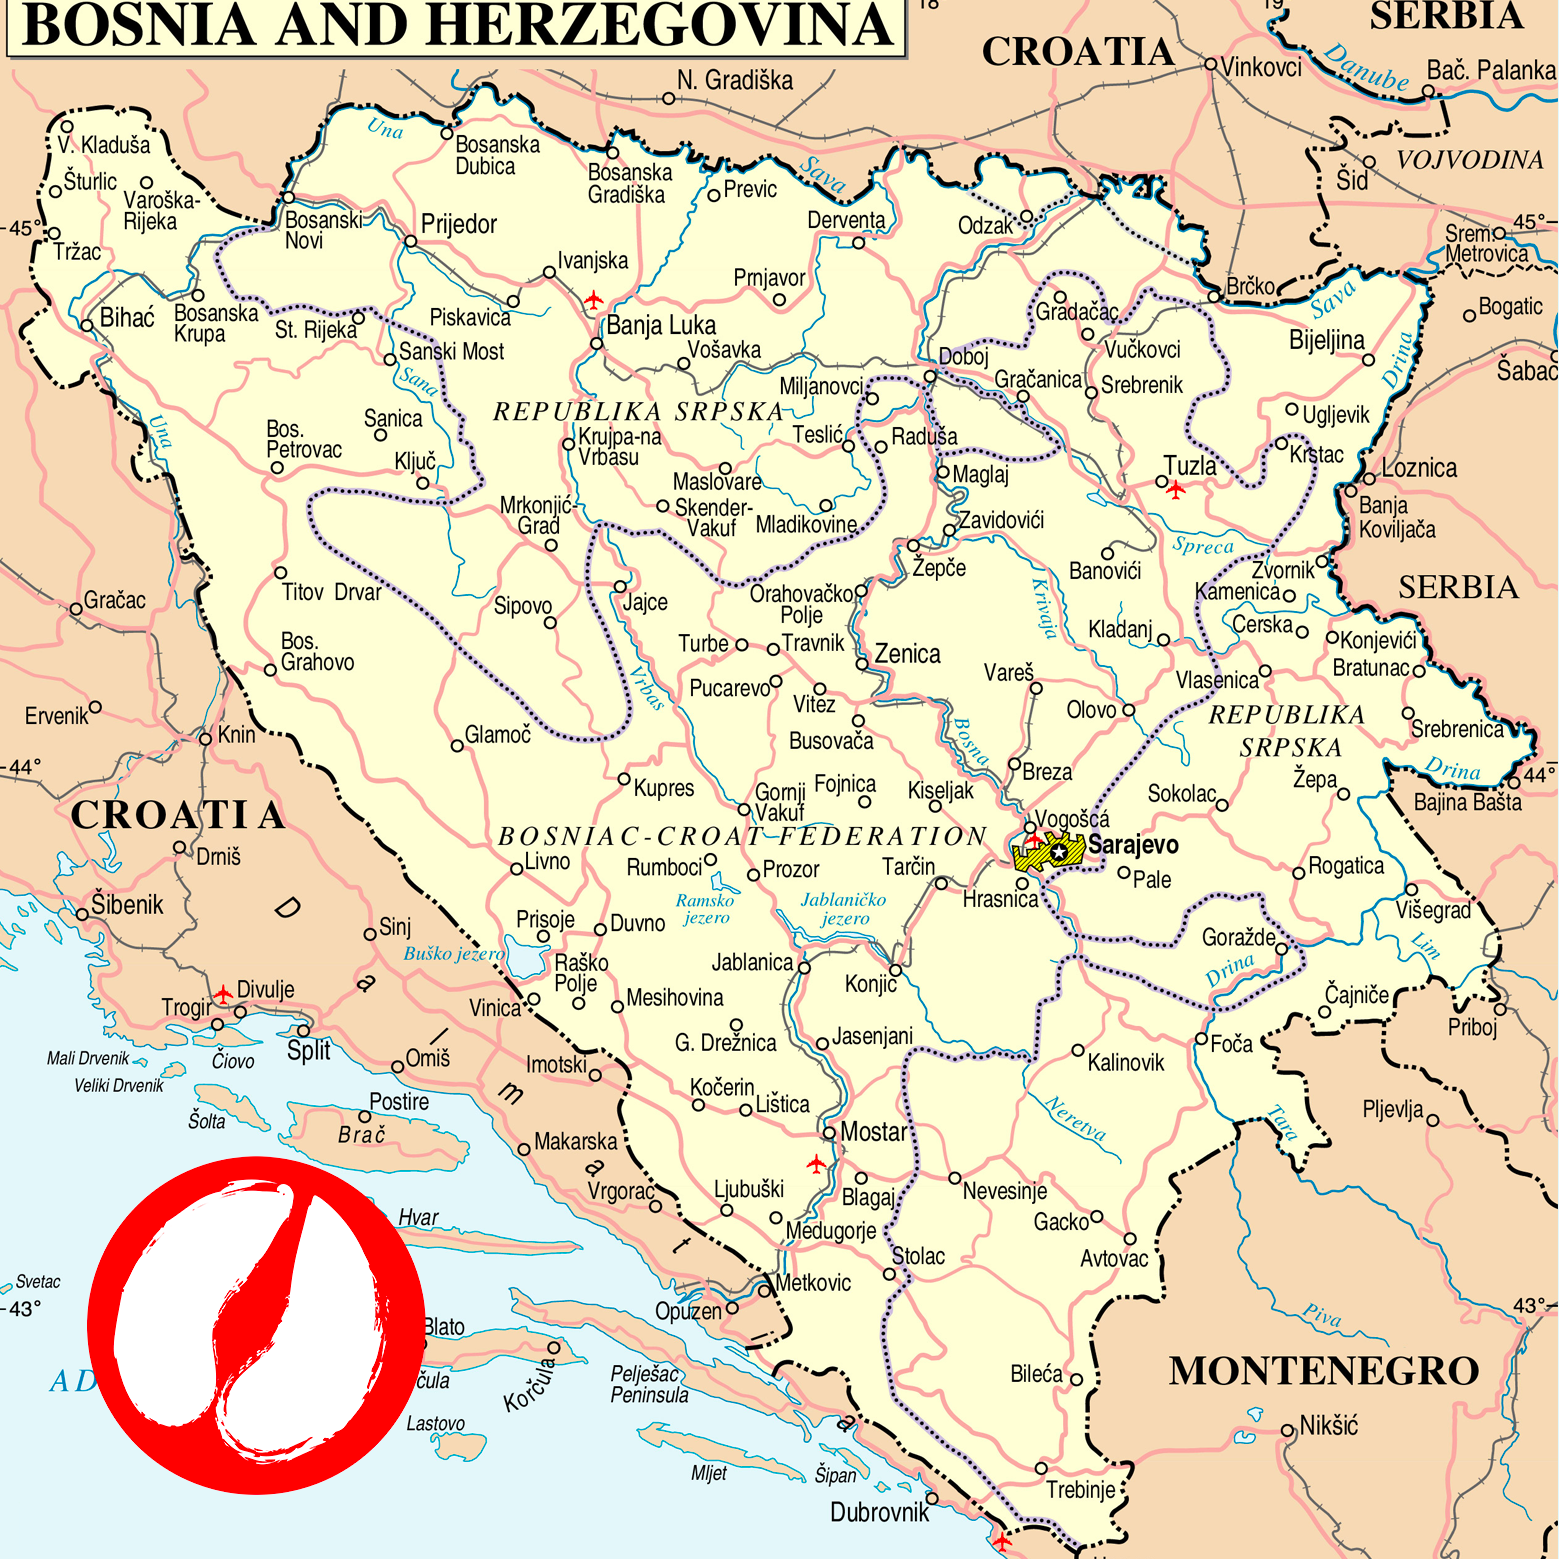 Kurs za hitne mjere u slučaju pojave slinavke i šapa u Bosni i Hercegovini